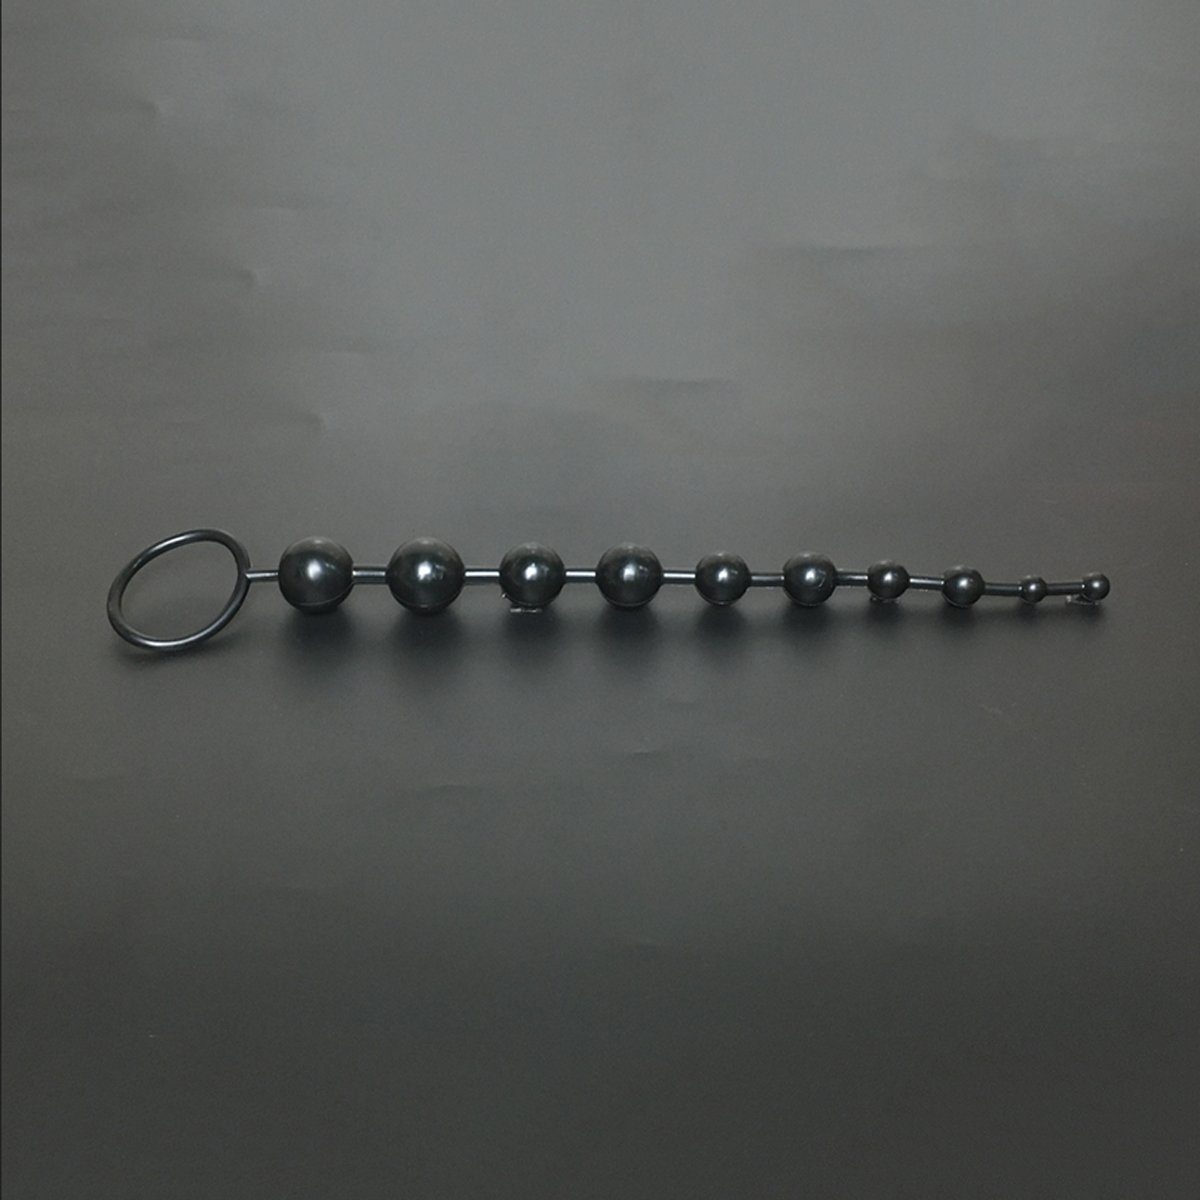 TPFSecret Analkette für Männer und Frauen, ergonomische große 29,5cm Anal Kette, mit 10 Perlen, und unterschiedlichem Durchmesser - Farbe: Schwarz